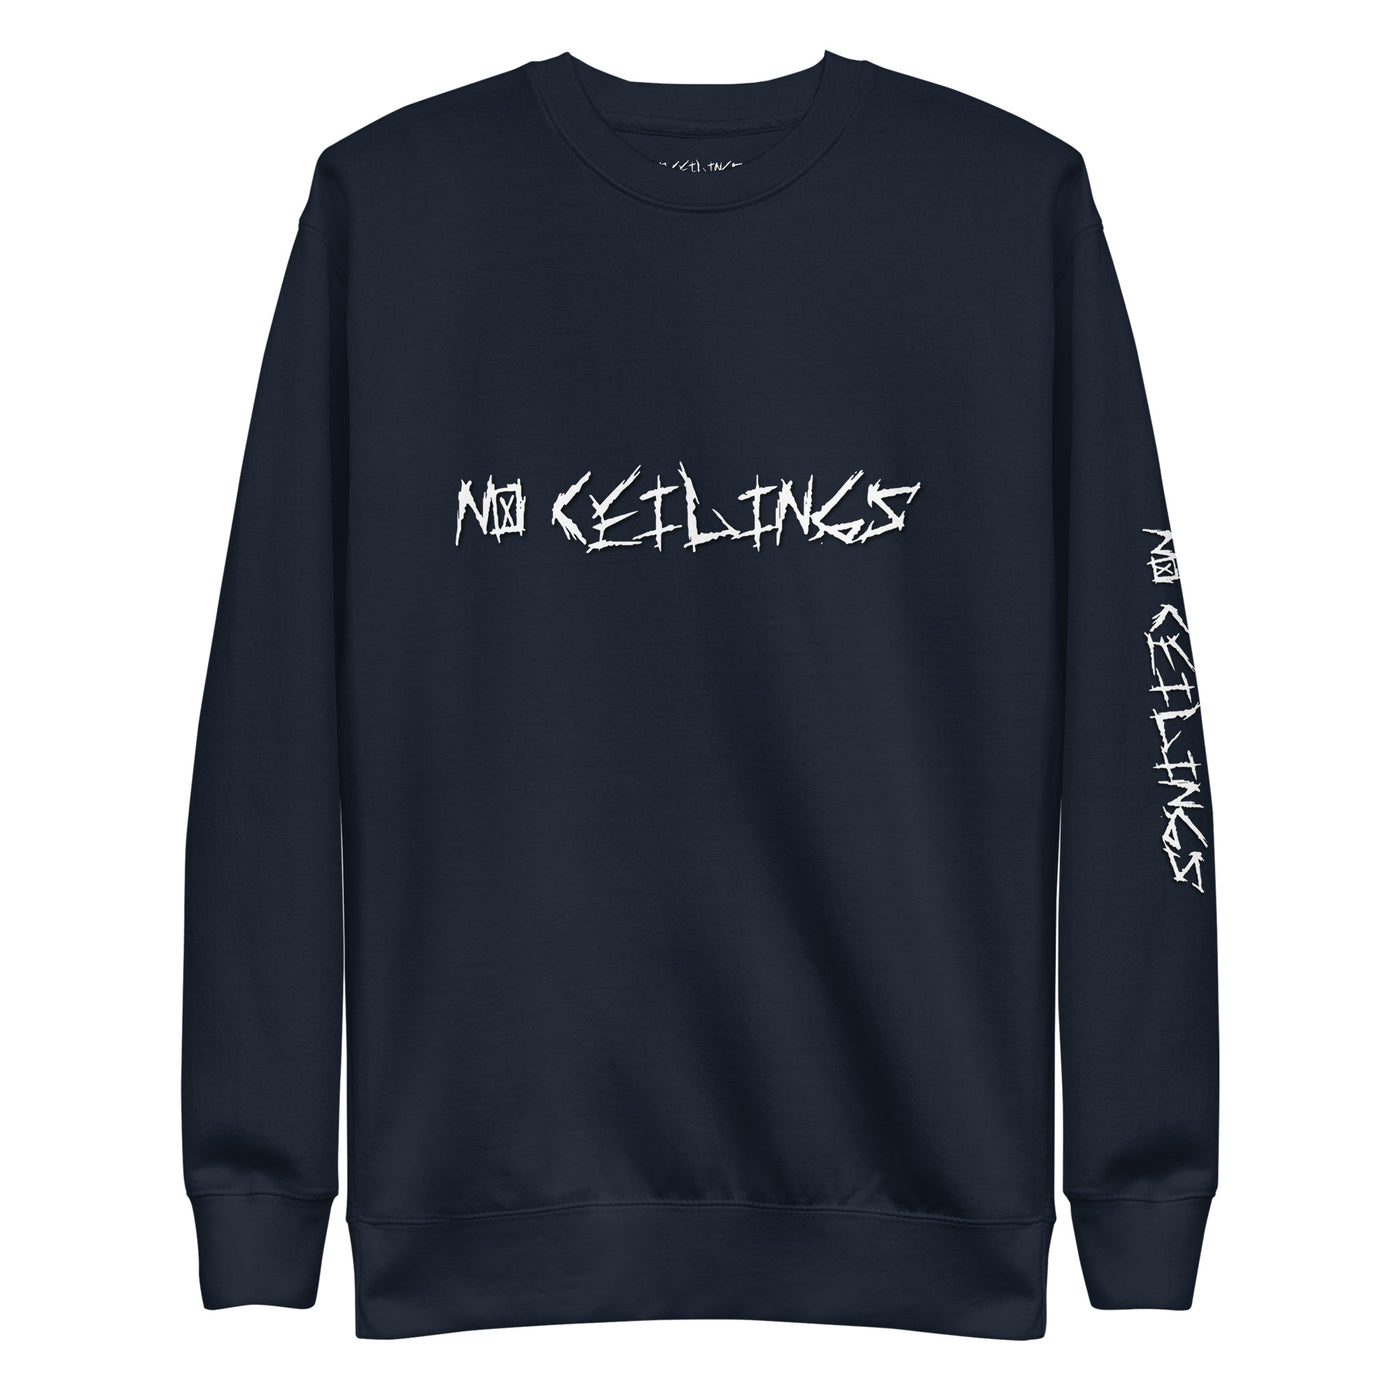 Oringal Noceilings Sweatshirt Unisex Premium Sweatshirt